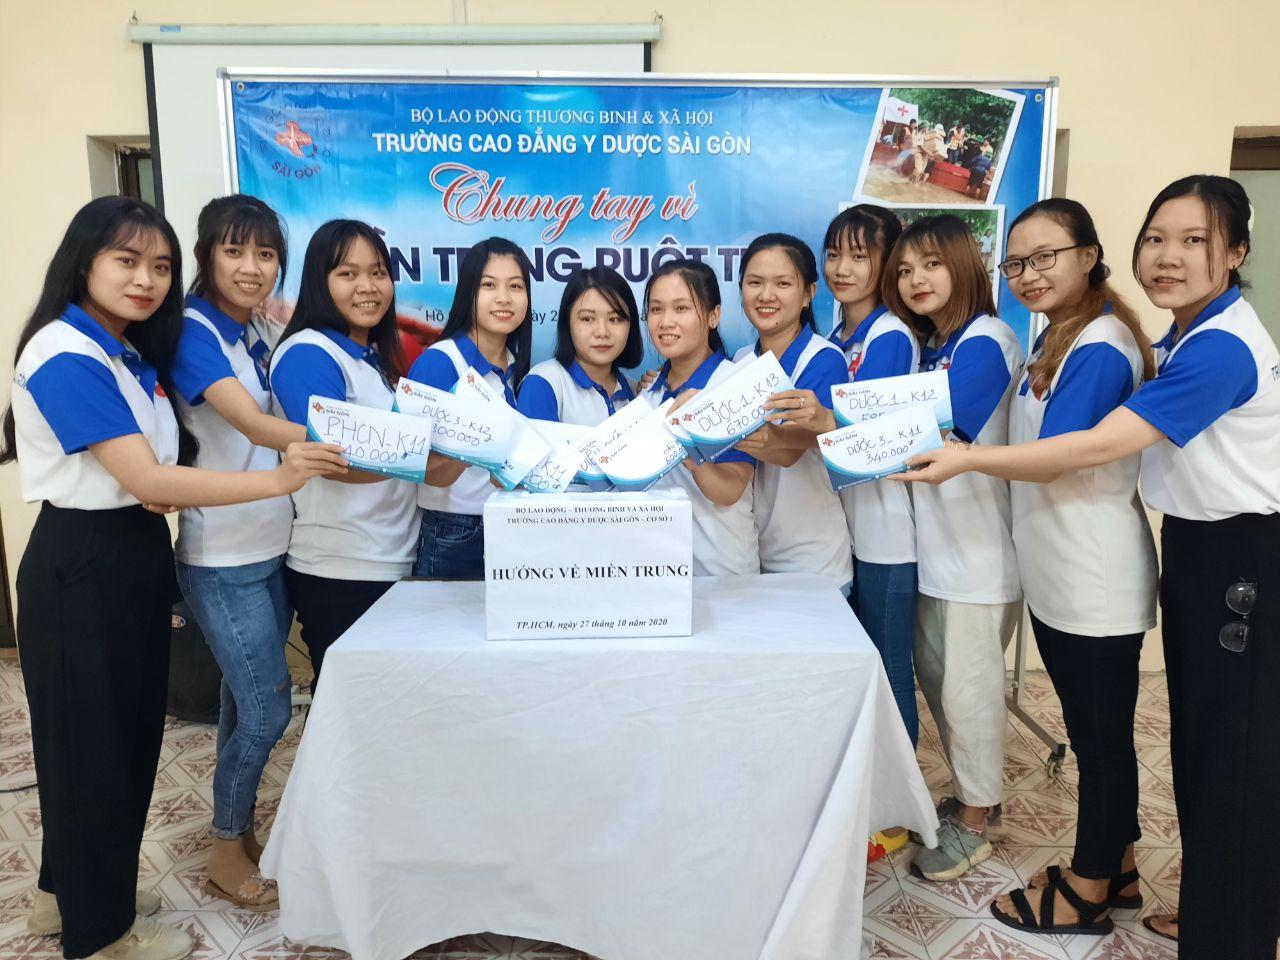 Trường Cao đẳng Y Dược Sài Gòn chung tay ủng hộ đồng bào Miền Trung